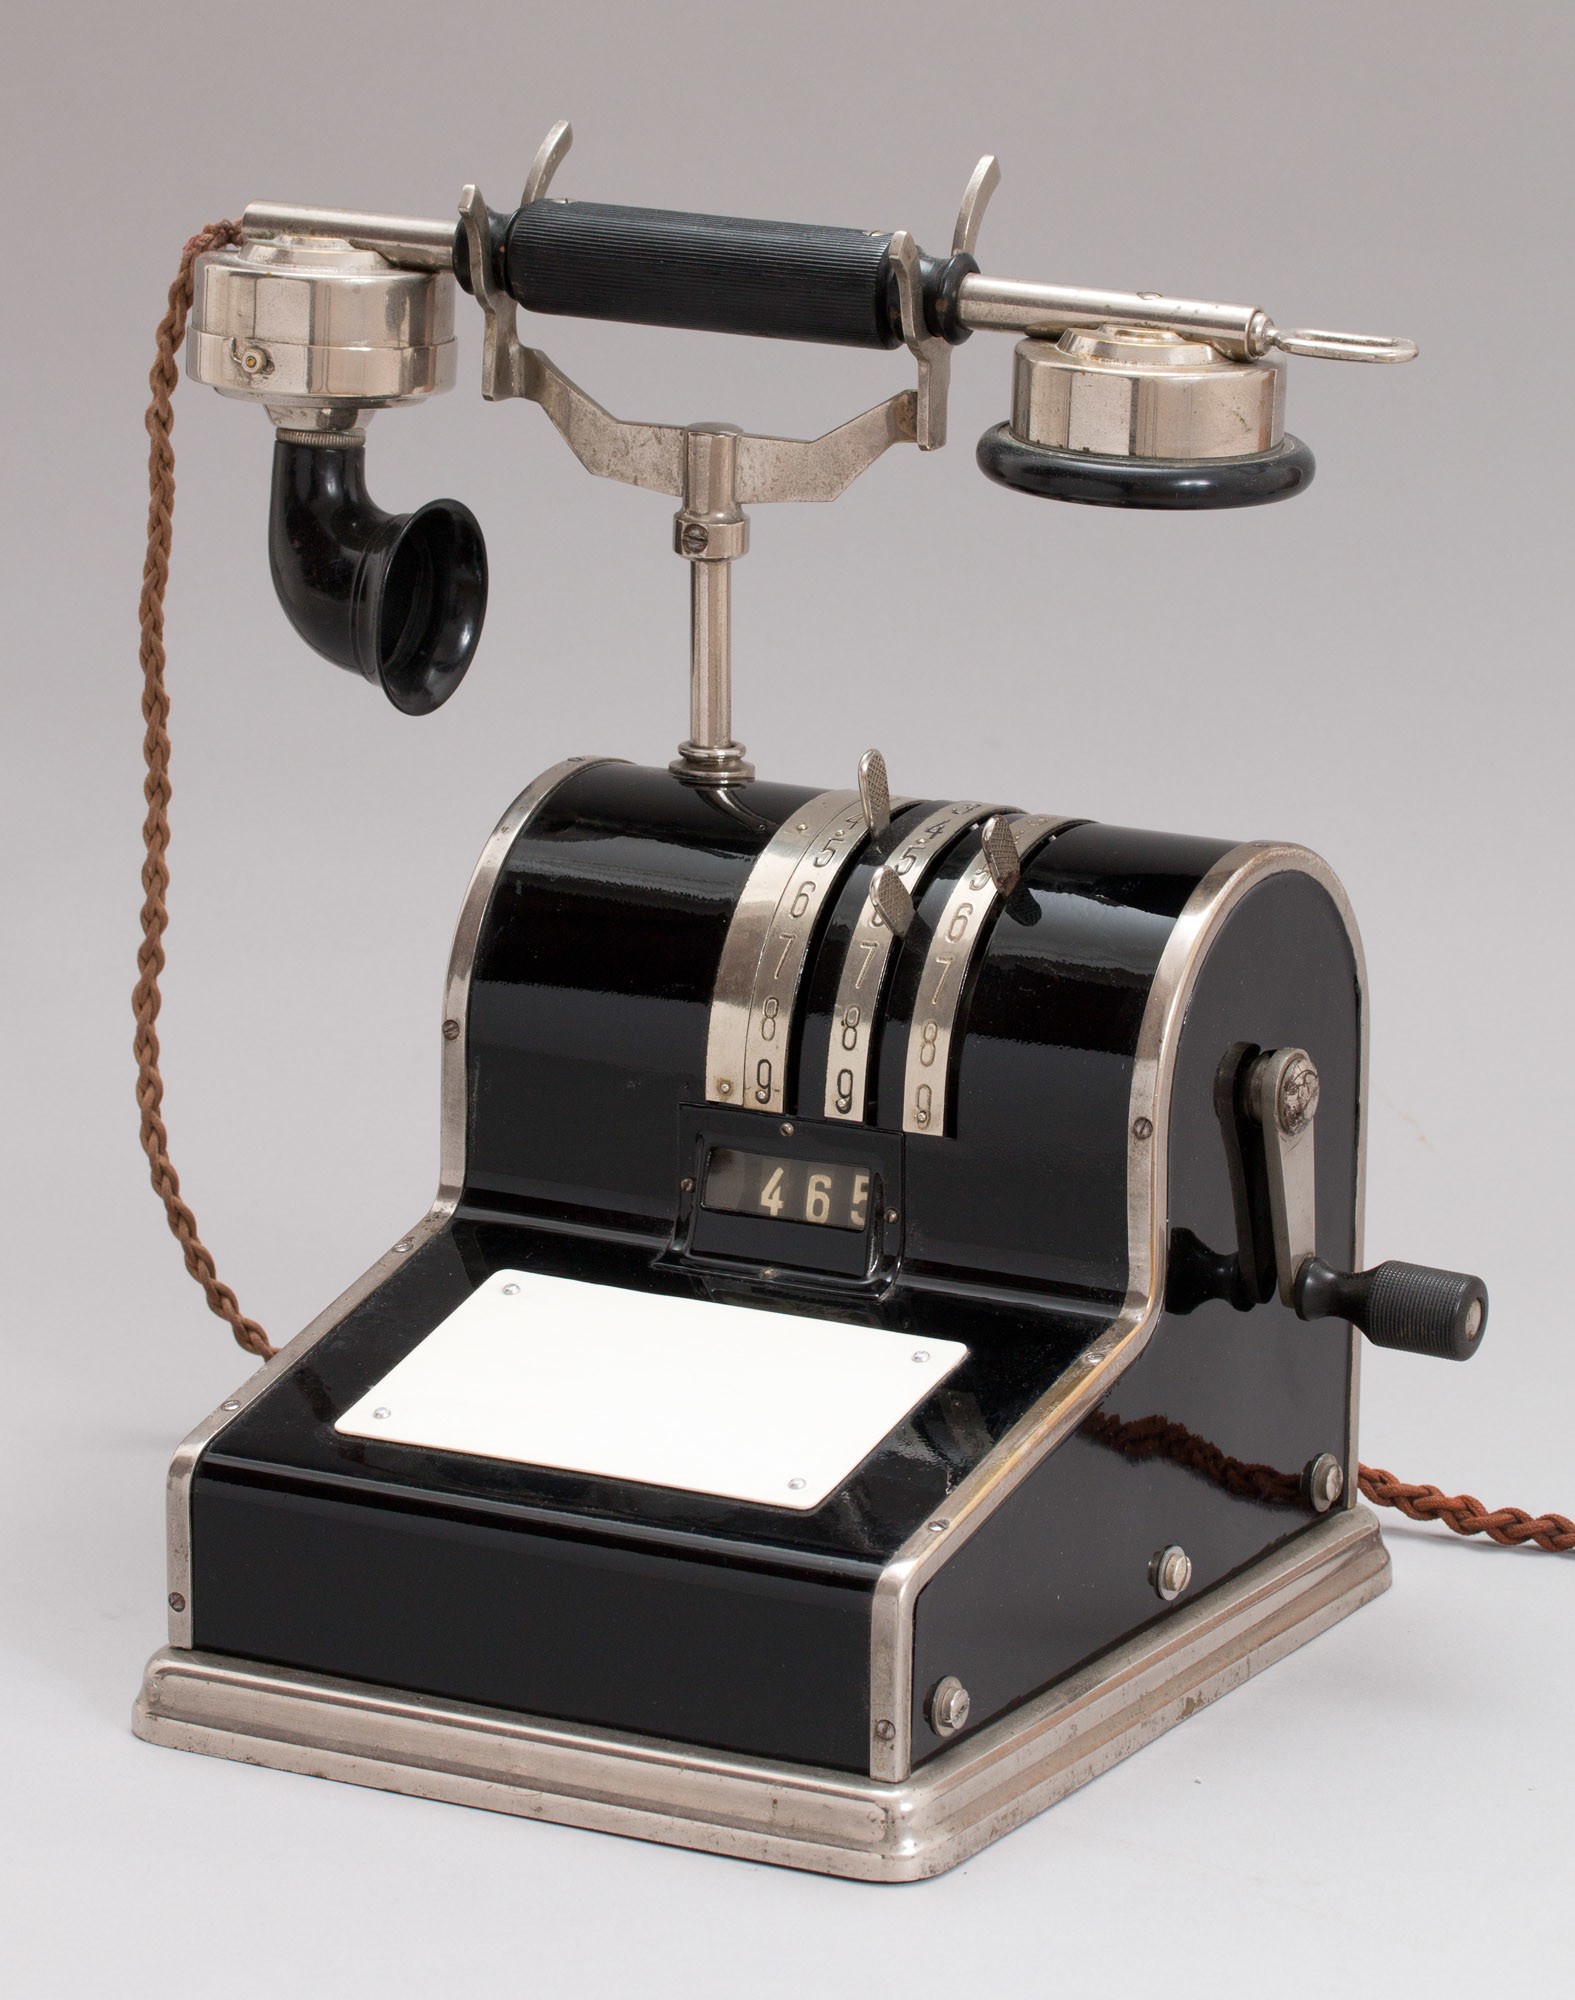 Asztali CB távbeszélő készülék, beállítókaros hívóművel (Postamúzeum CC BY-NC-SA)